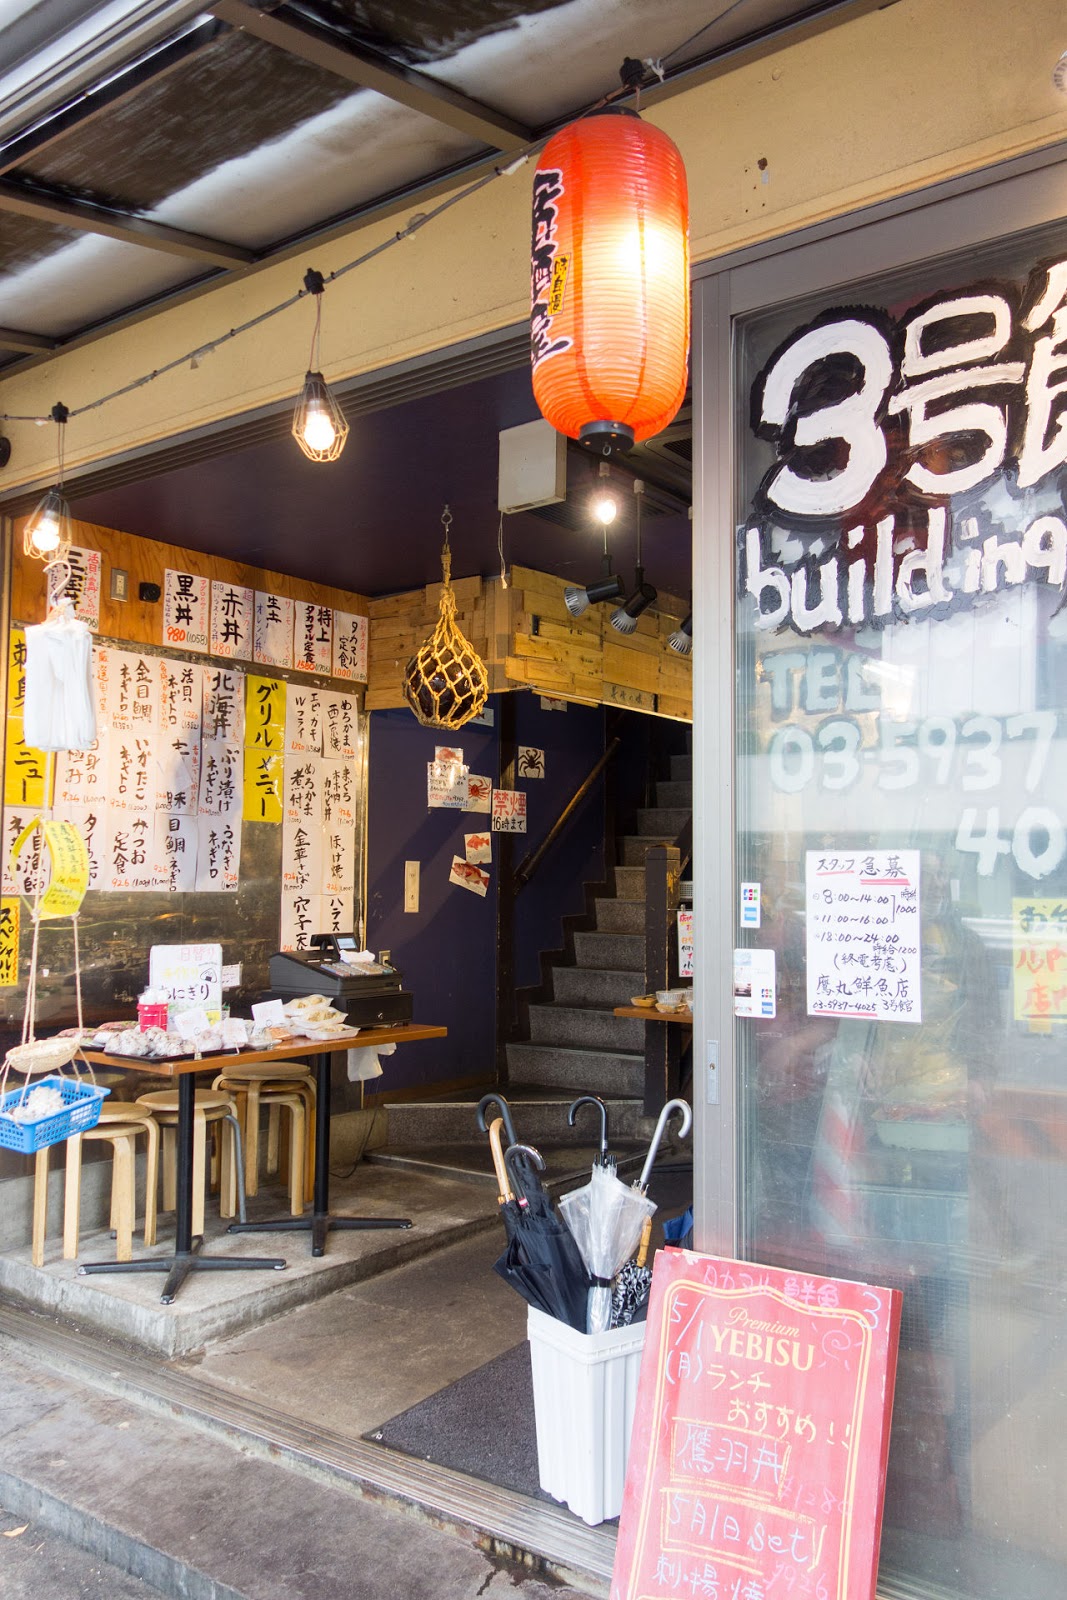 意外と酒が高い 新宿タカマル鮮魚店で昼飲み 食と遊びと 時々写真